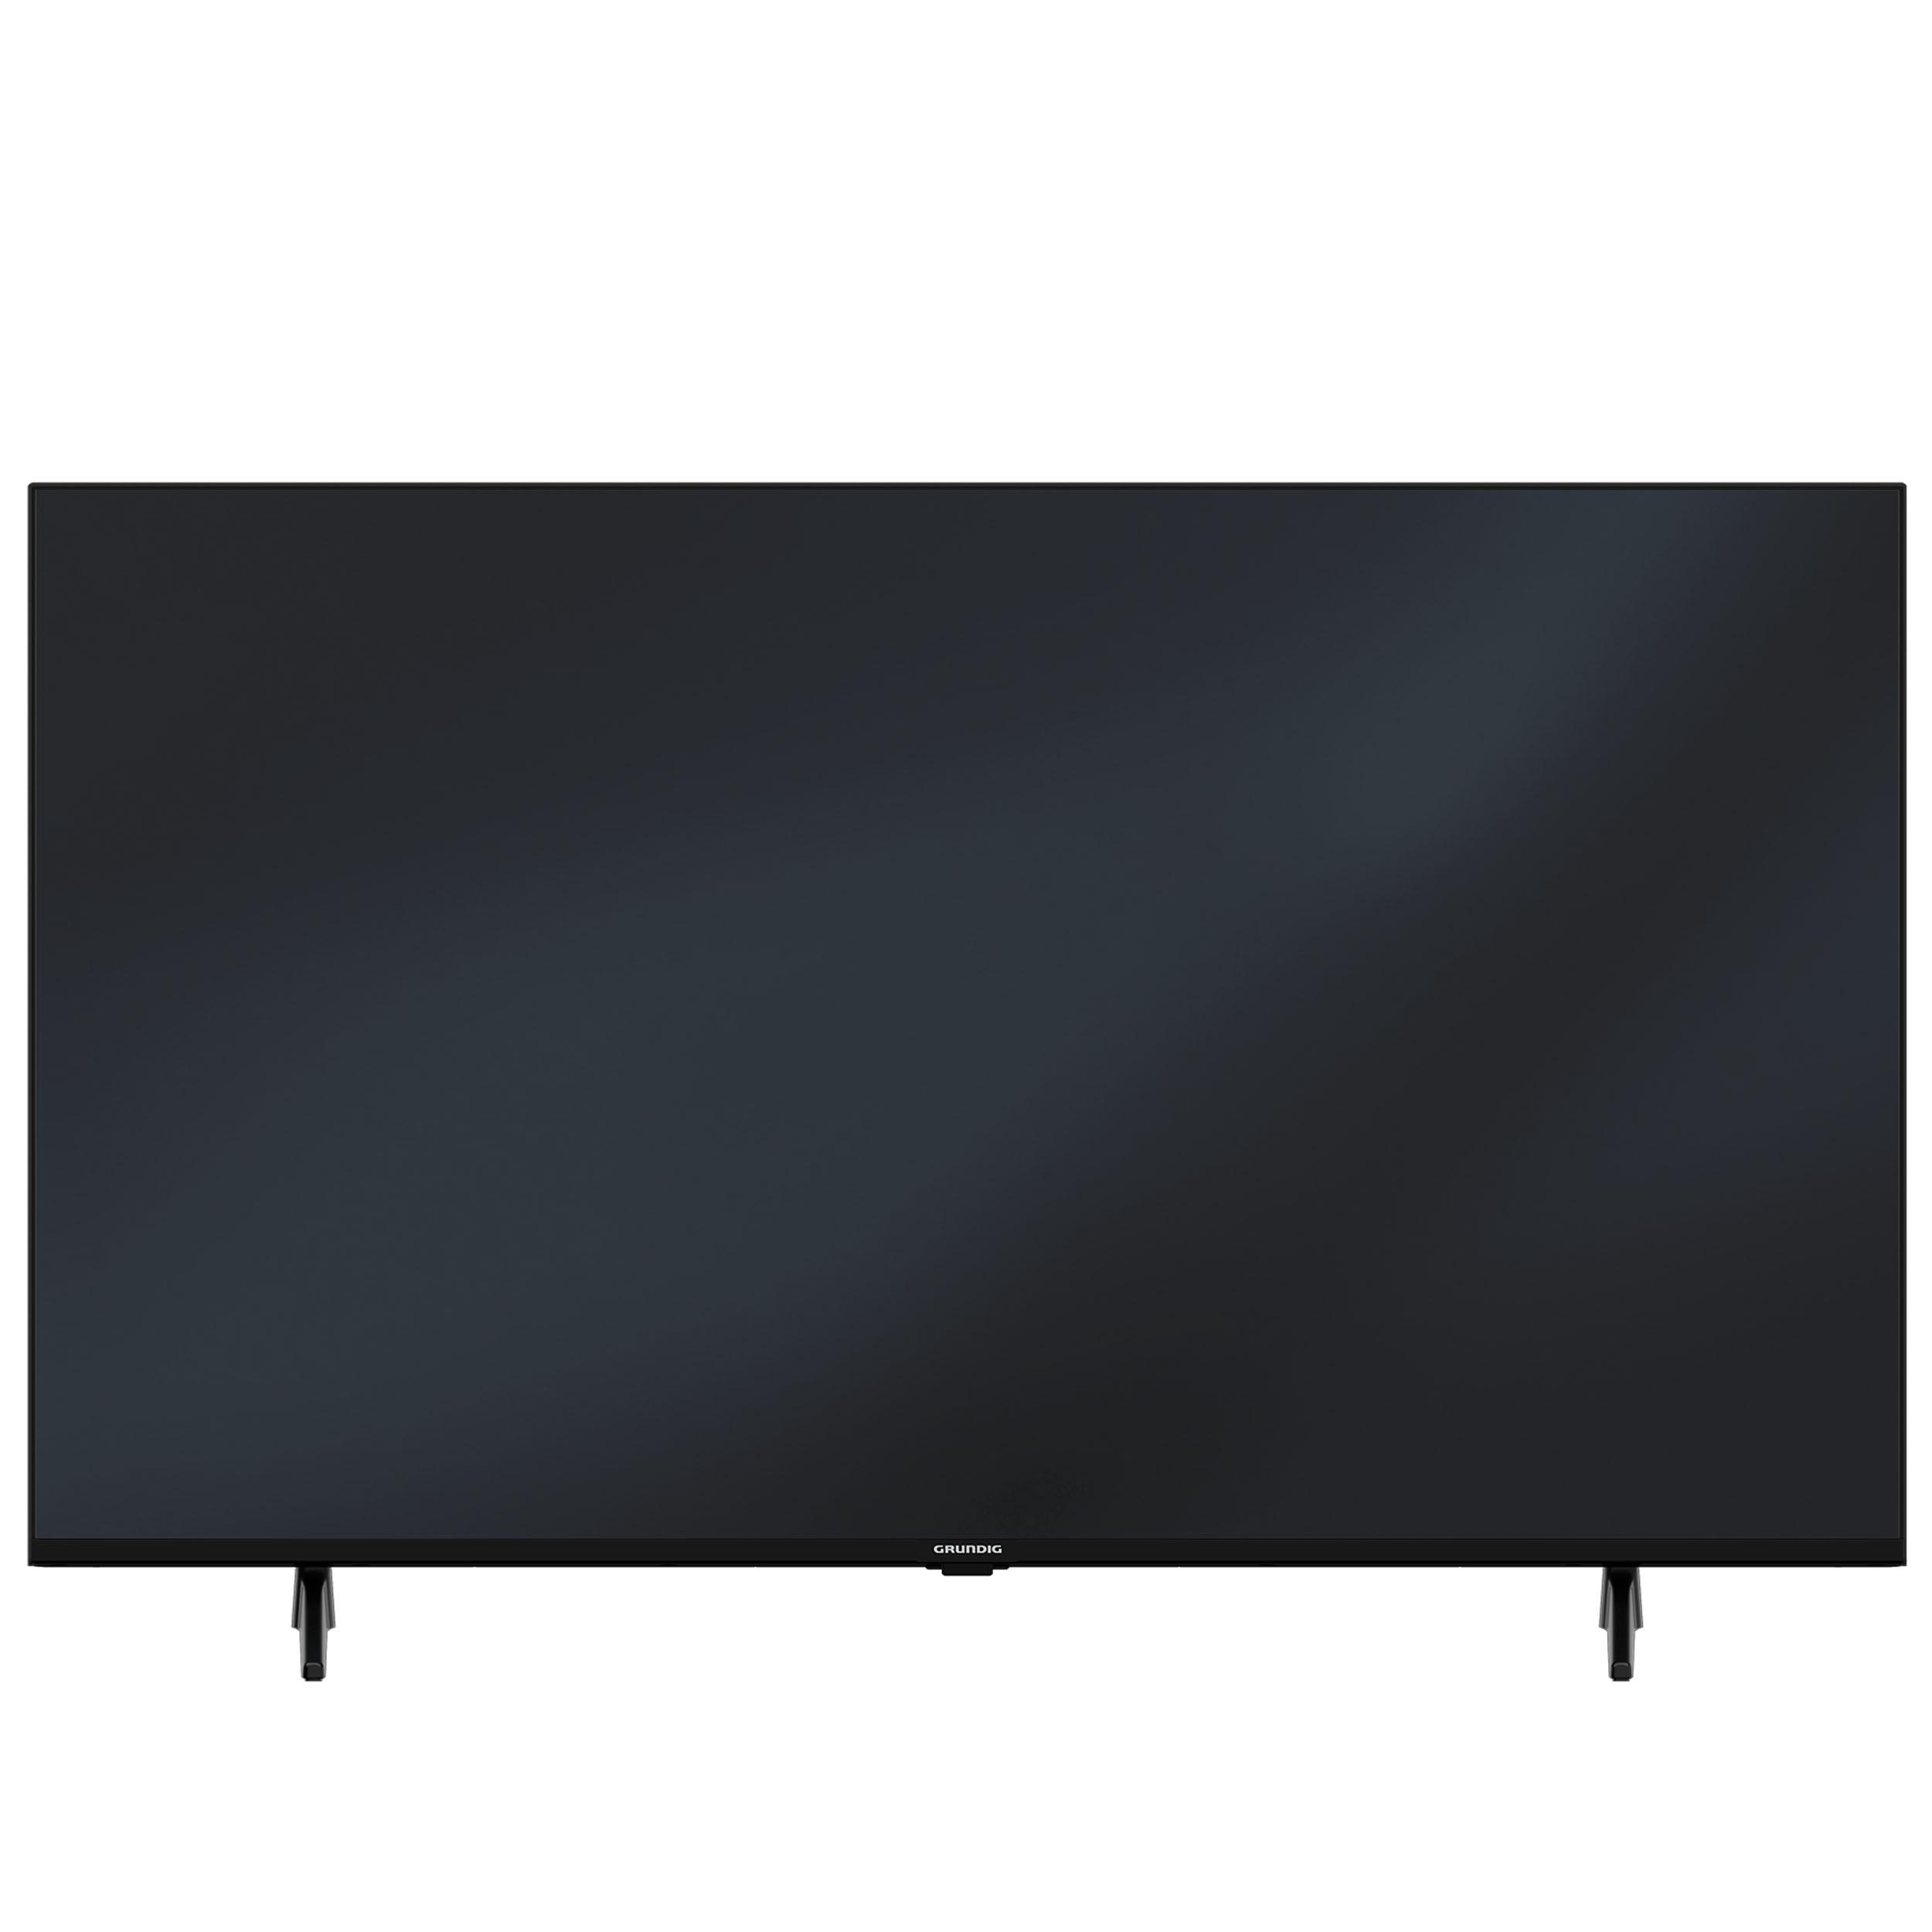 GRUNDIG 75 VCE Smart cm, 4K, TV, TV / UHD SMART 223 189 Android Zoll (75 11)